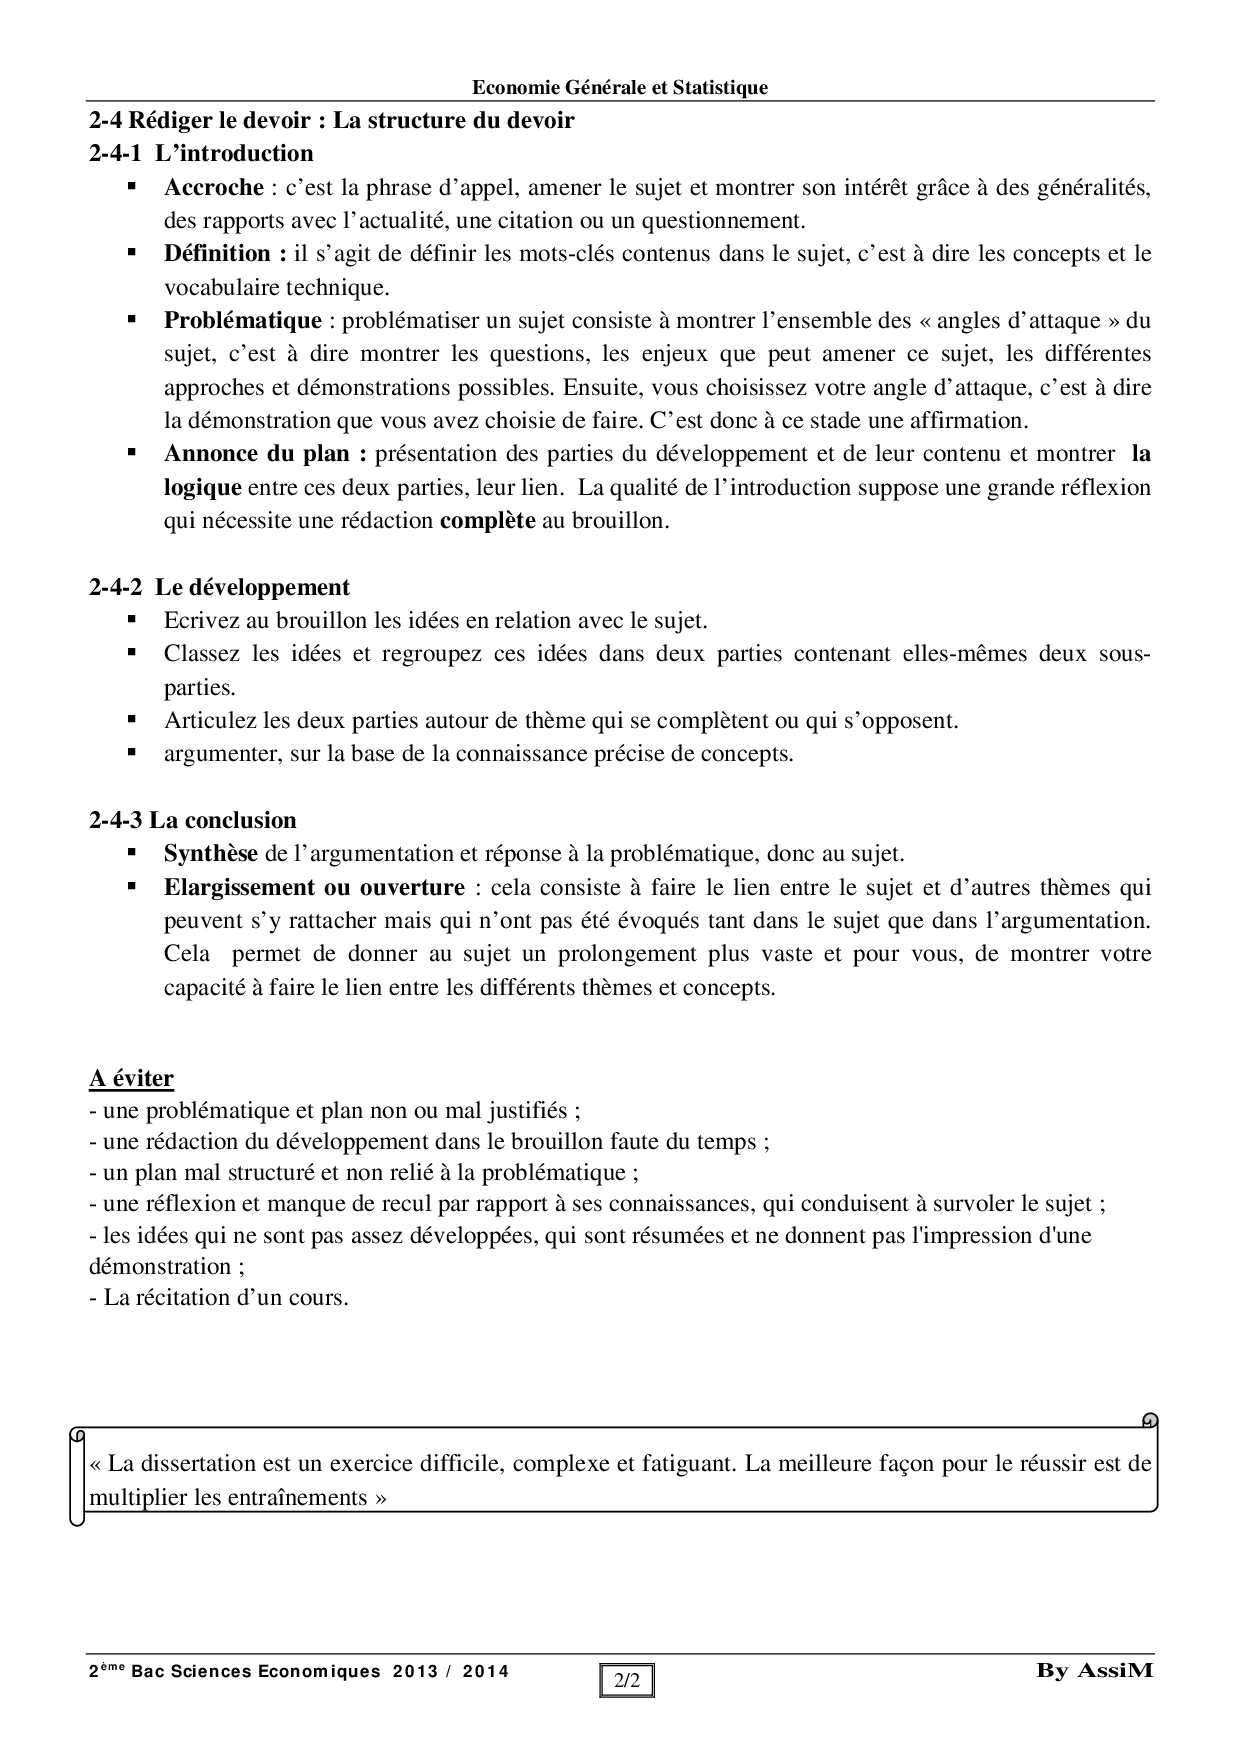 dissertation francaise methodologie pdf